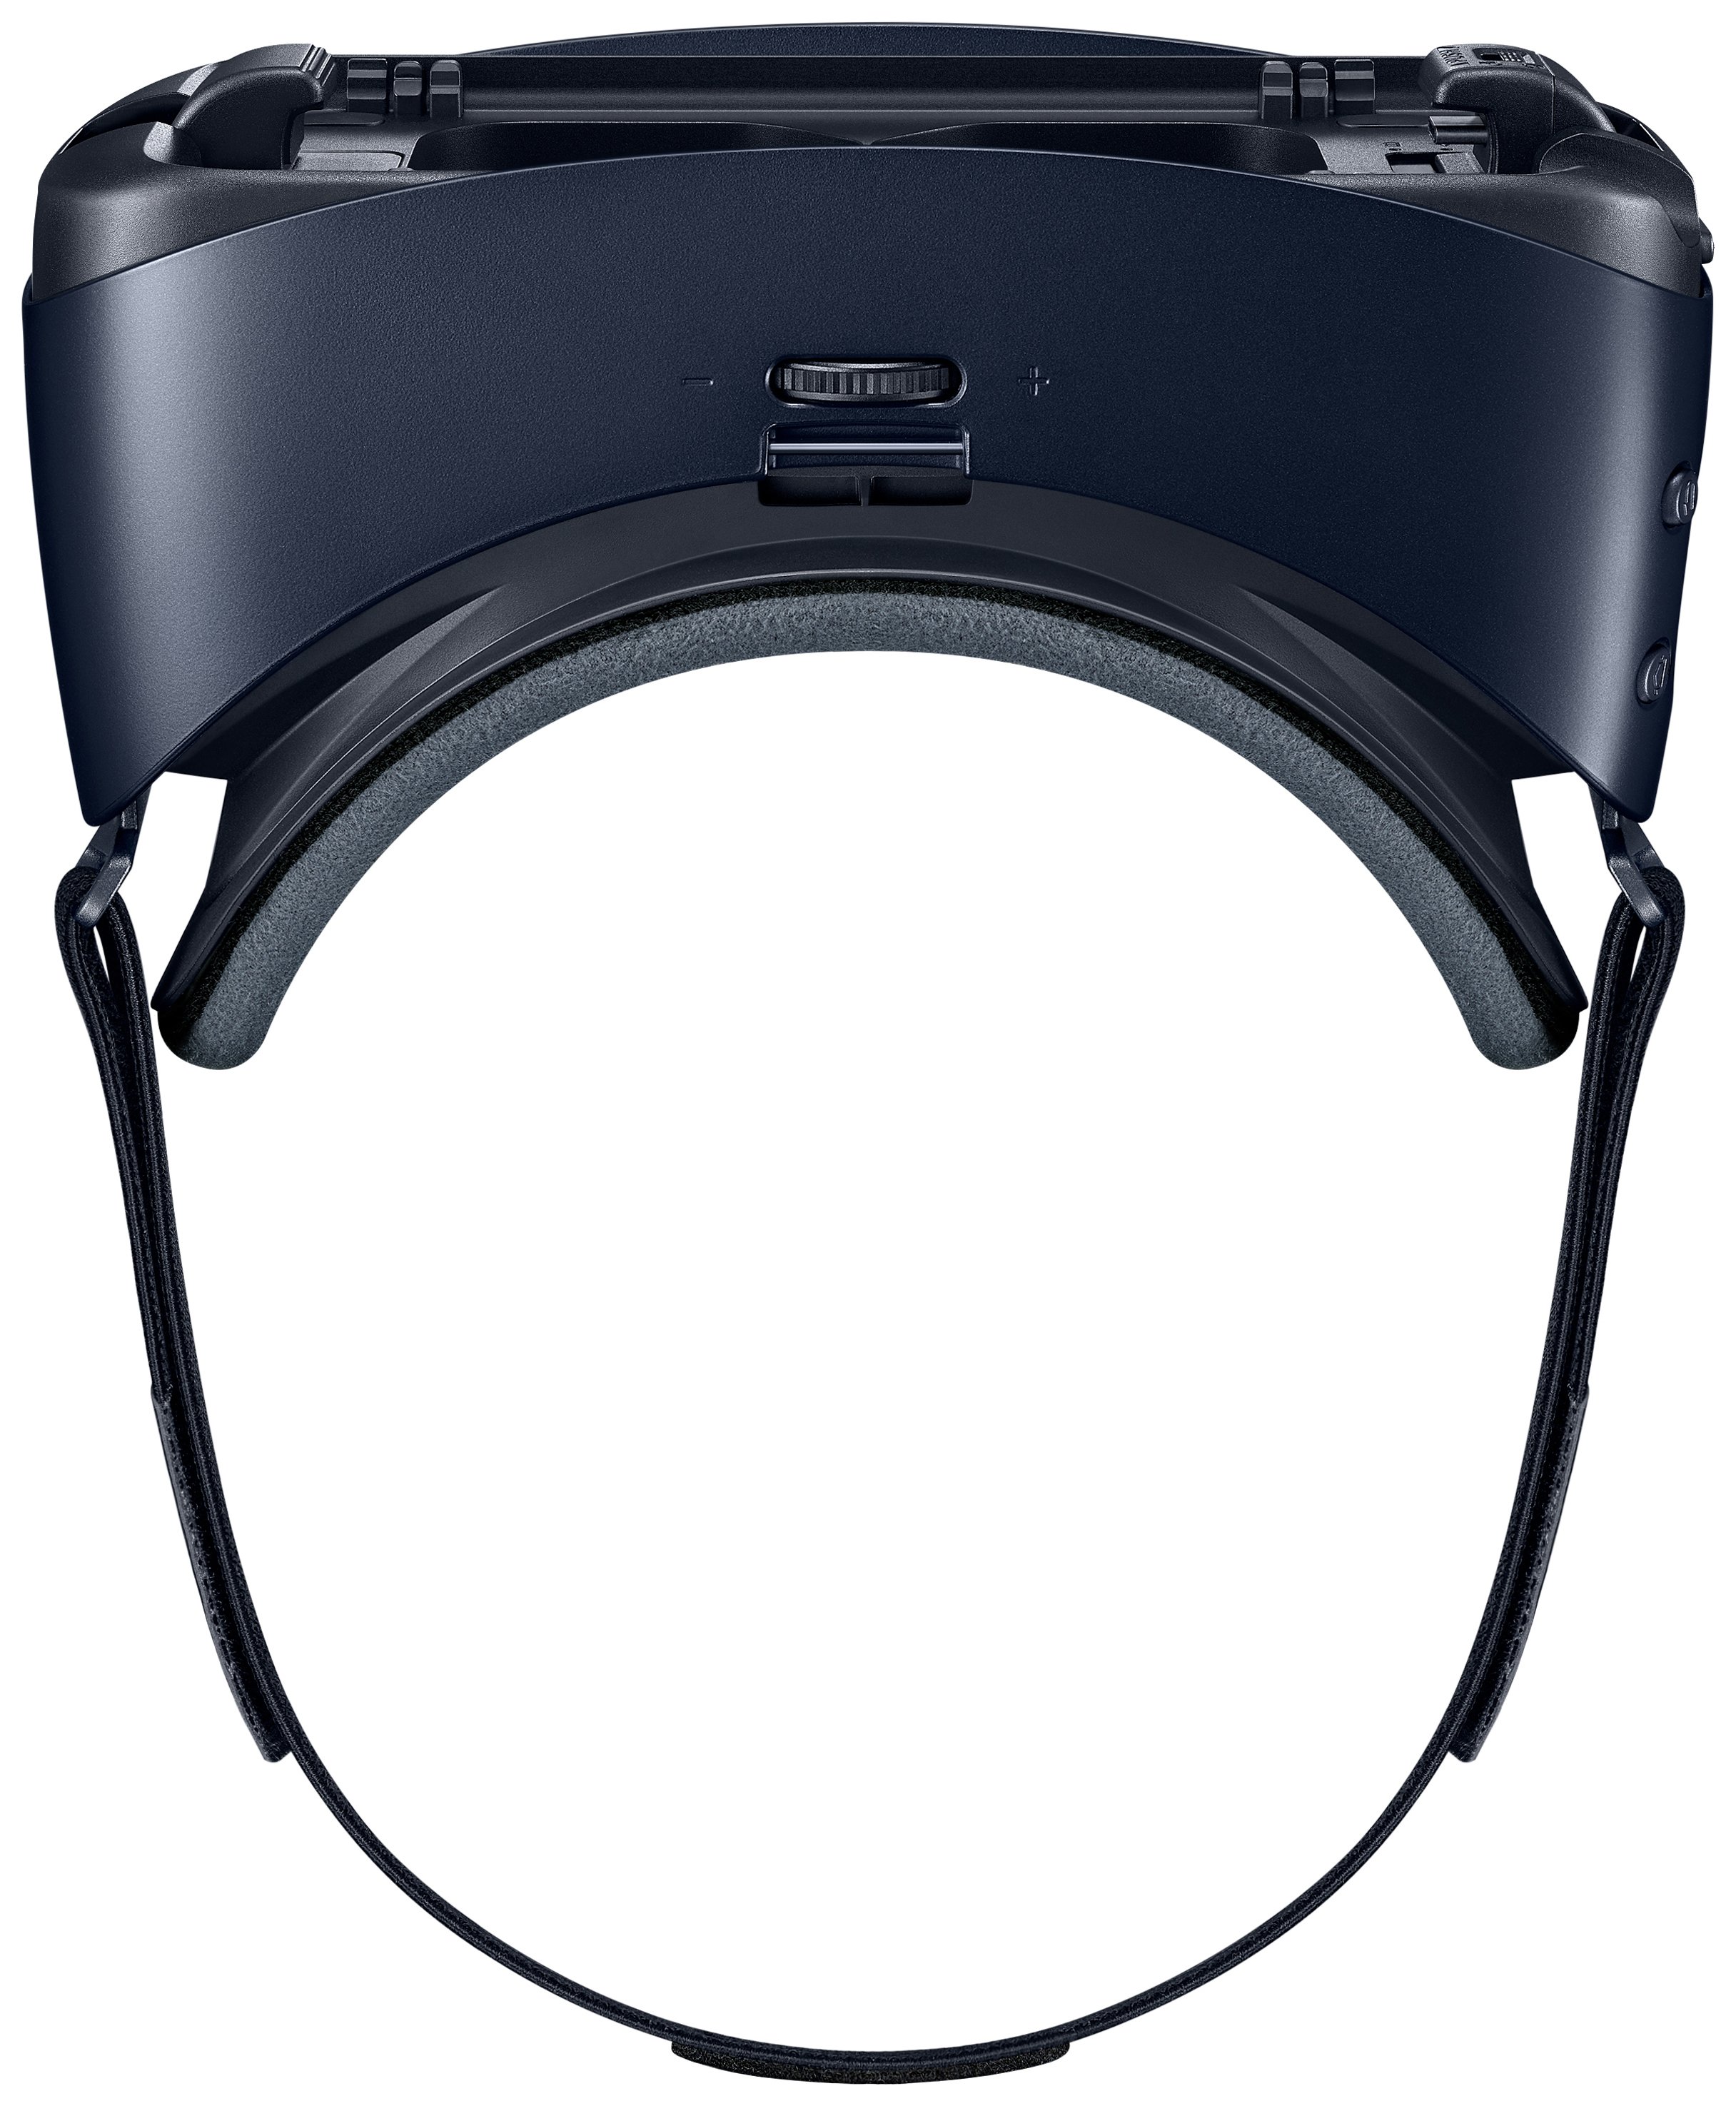 Samsung Galaxy Gear Virtual Reality Edition